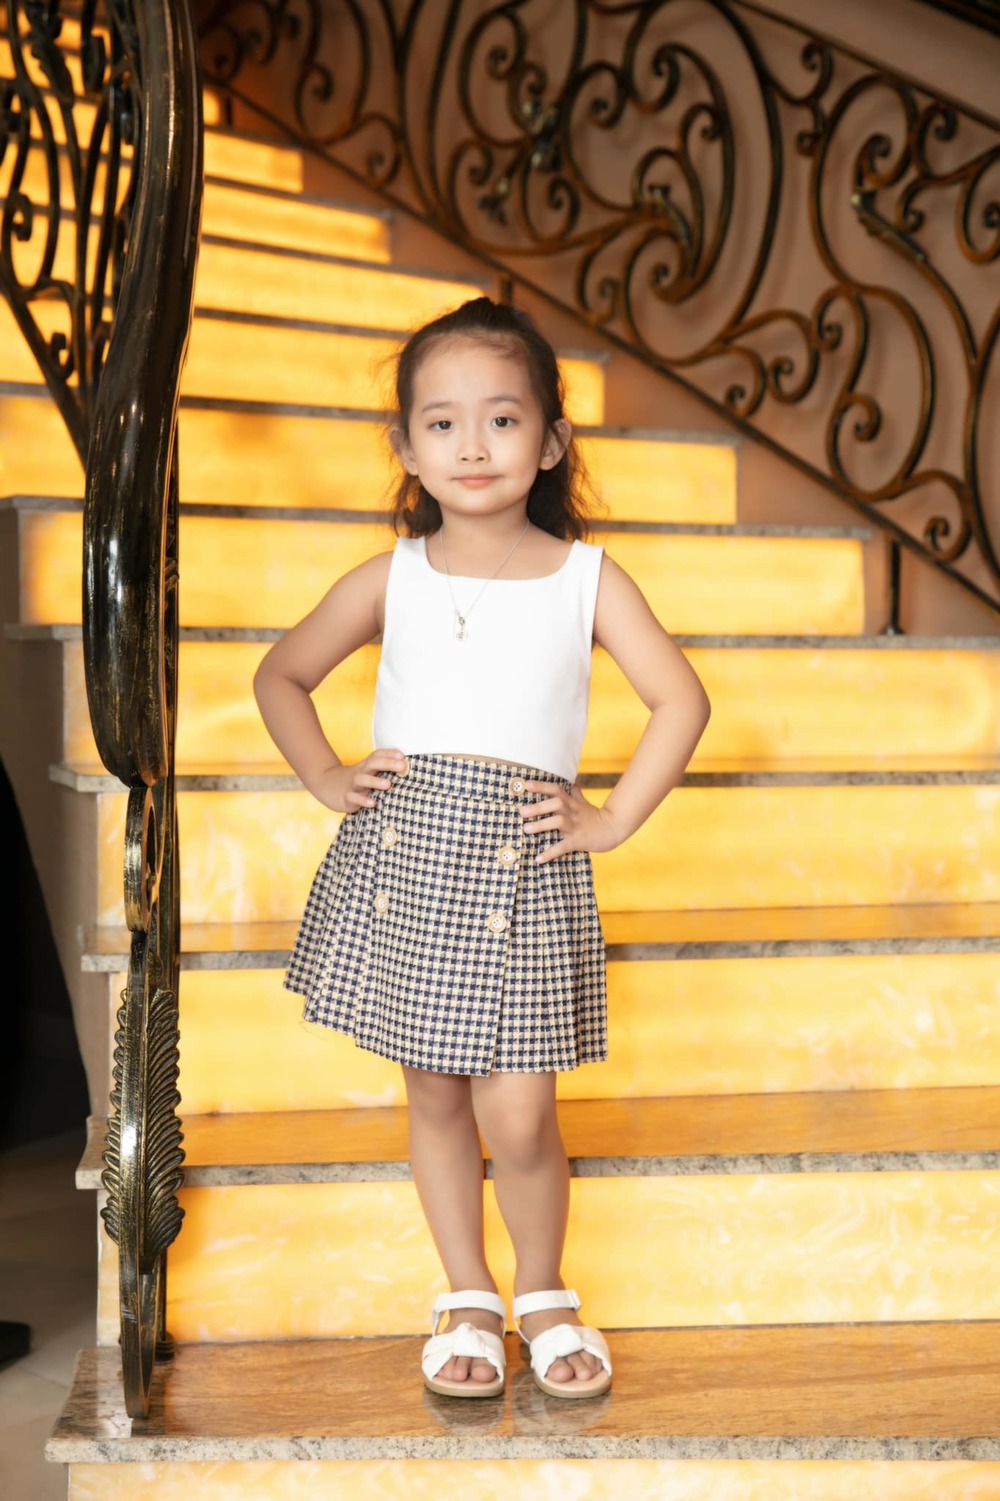 Con gái Khánh Thi mới 4 tuổi đã sành điệu không kém người lớn-8